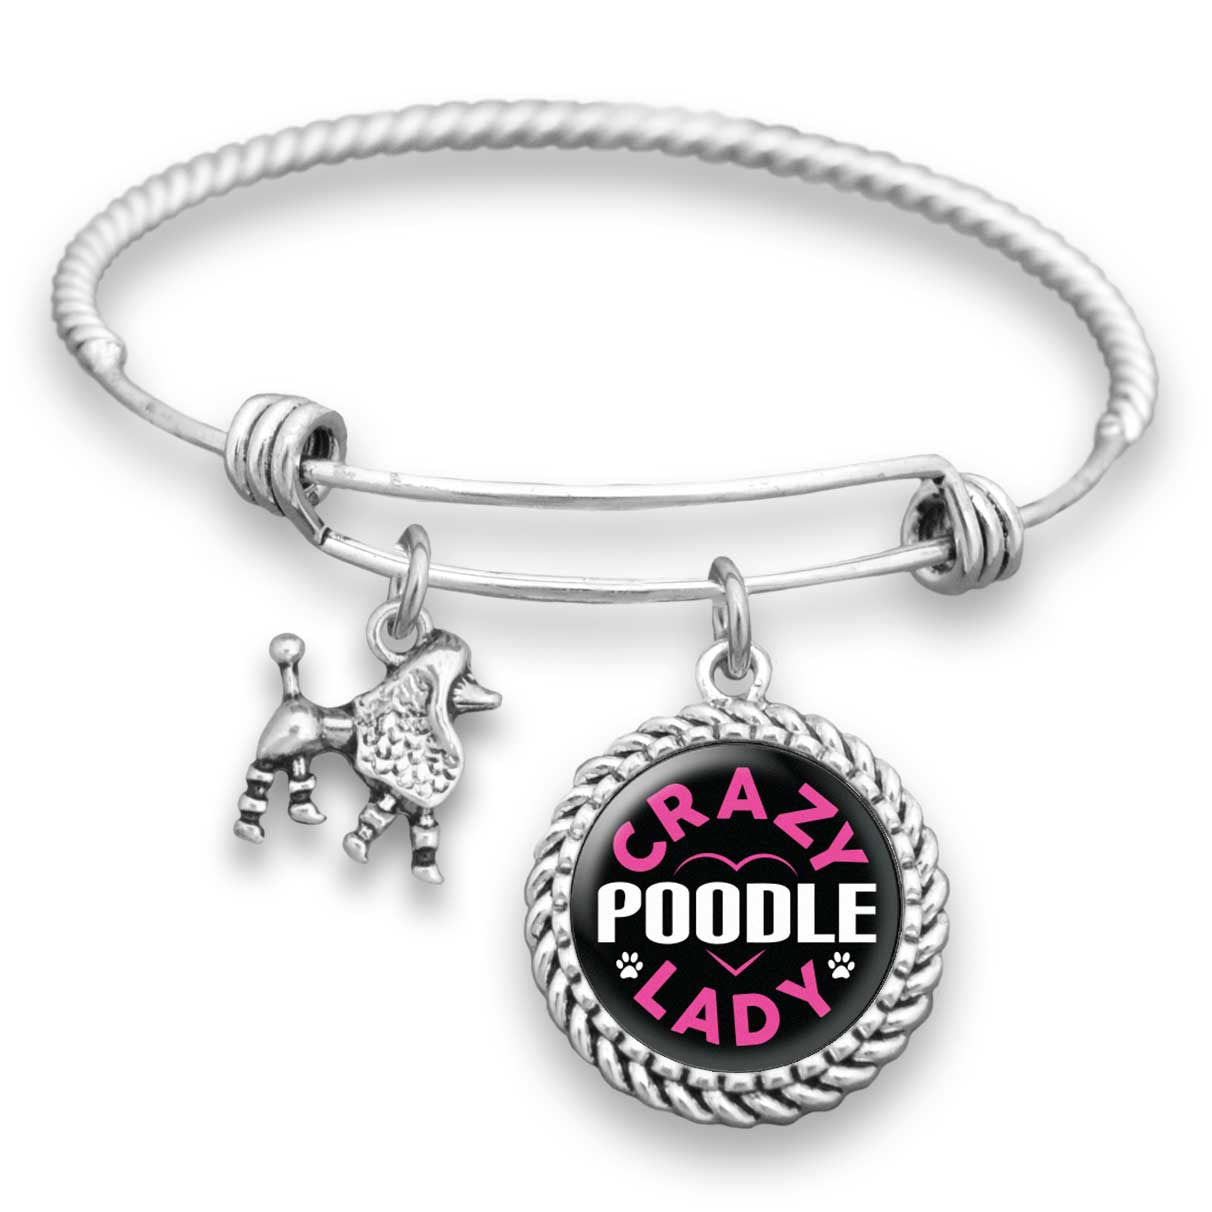 Crazy Poodle Lady Funny Charm Bracelet